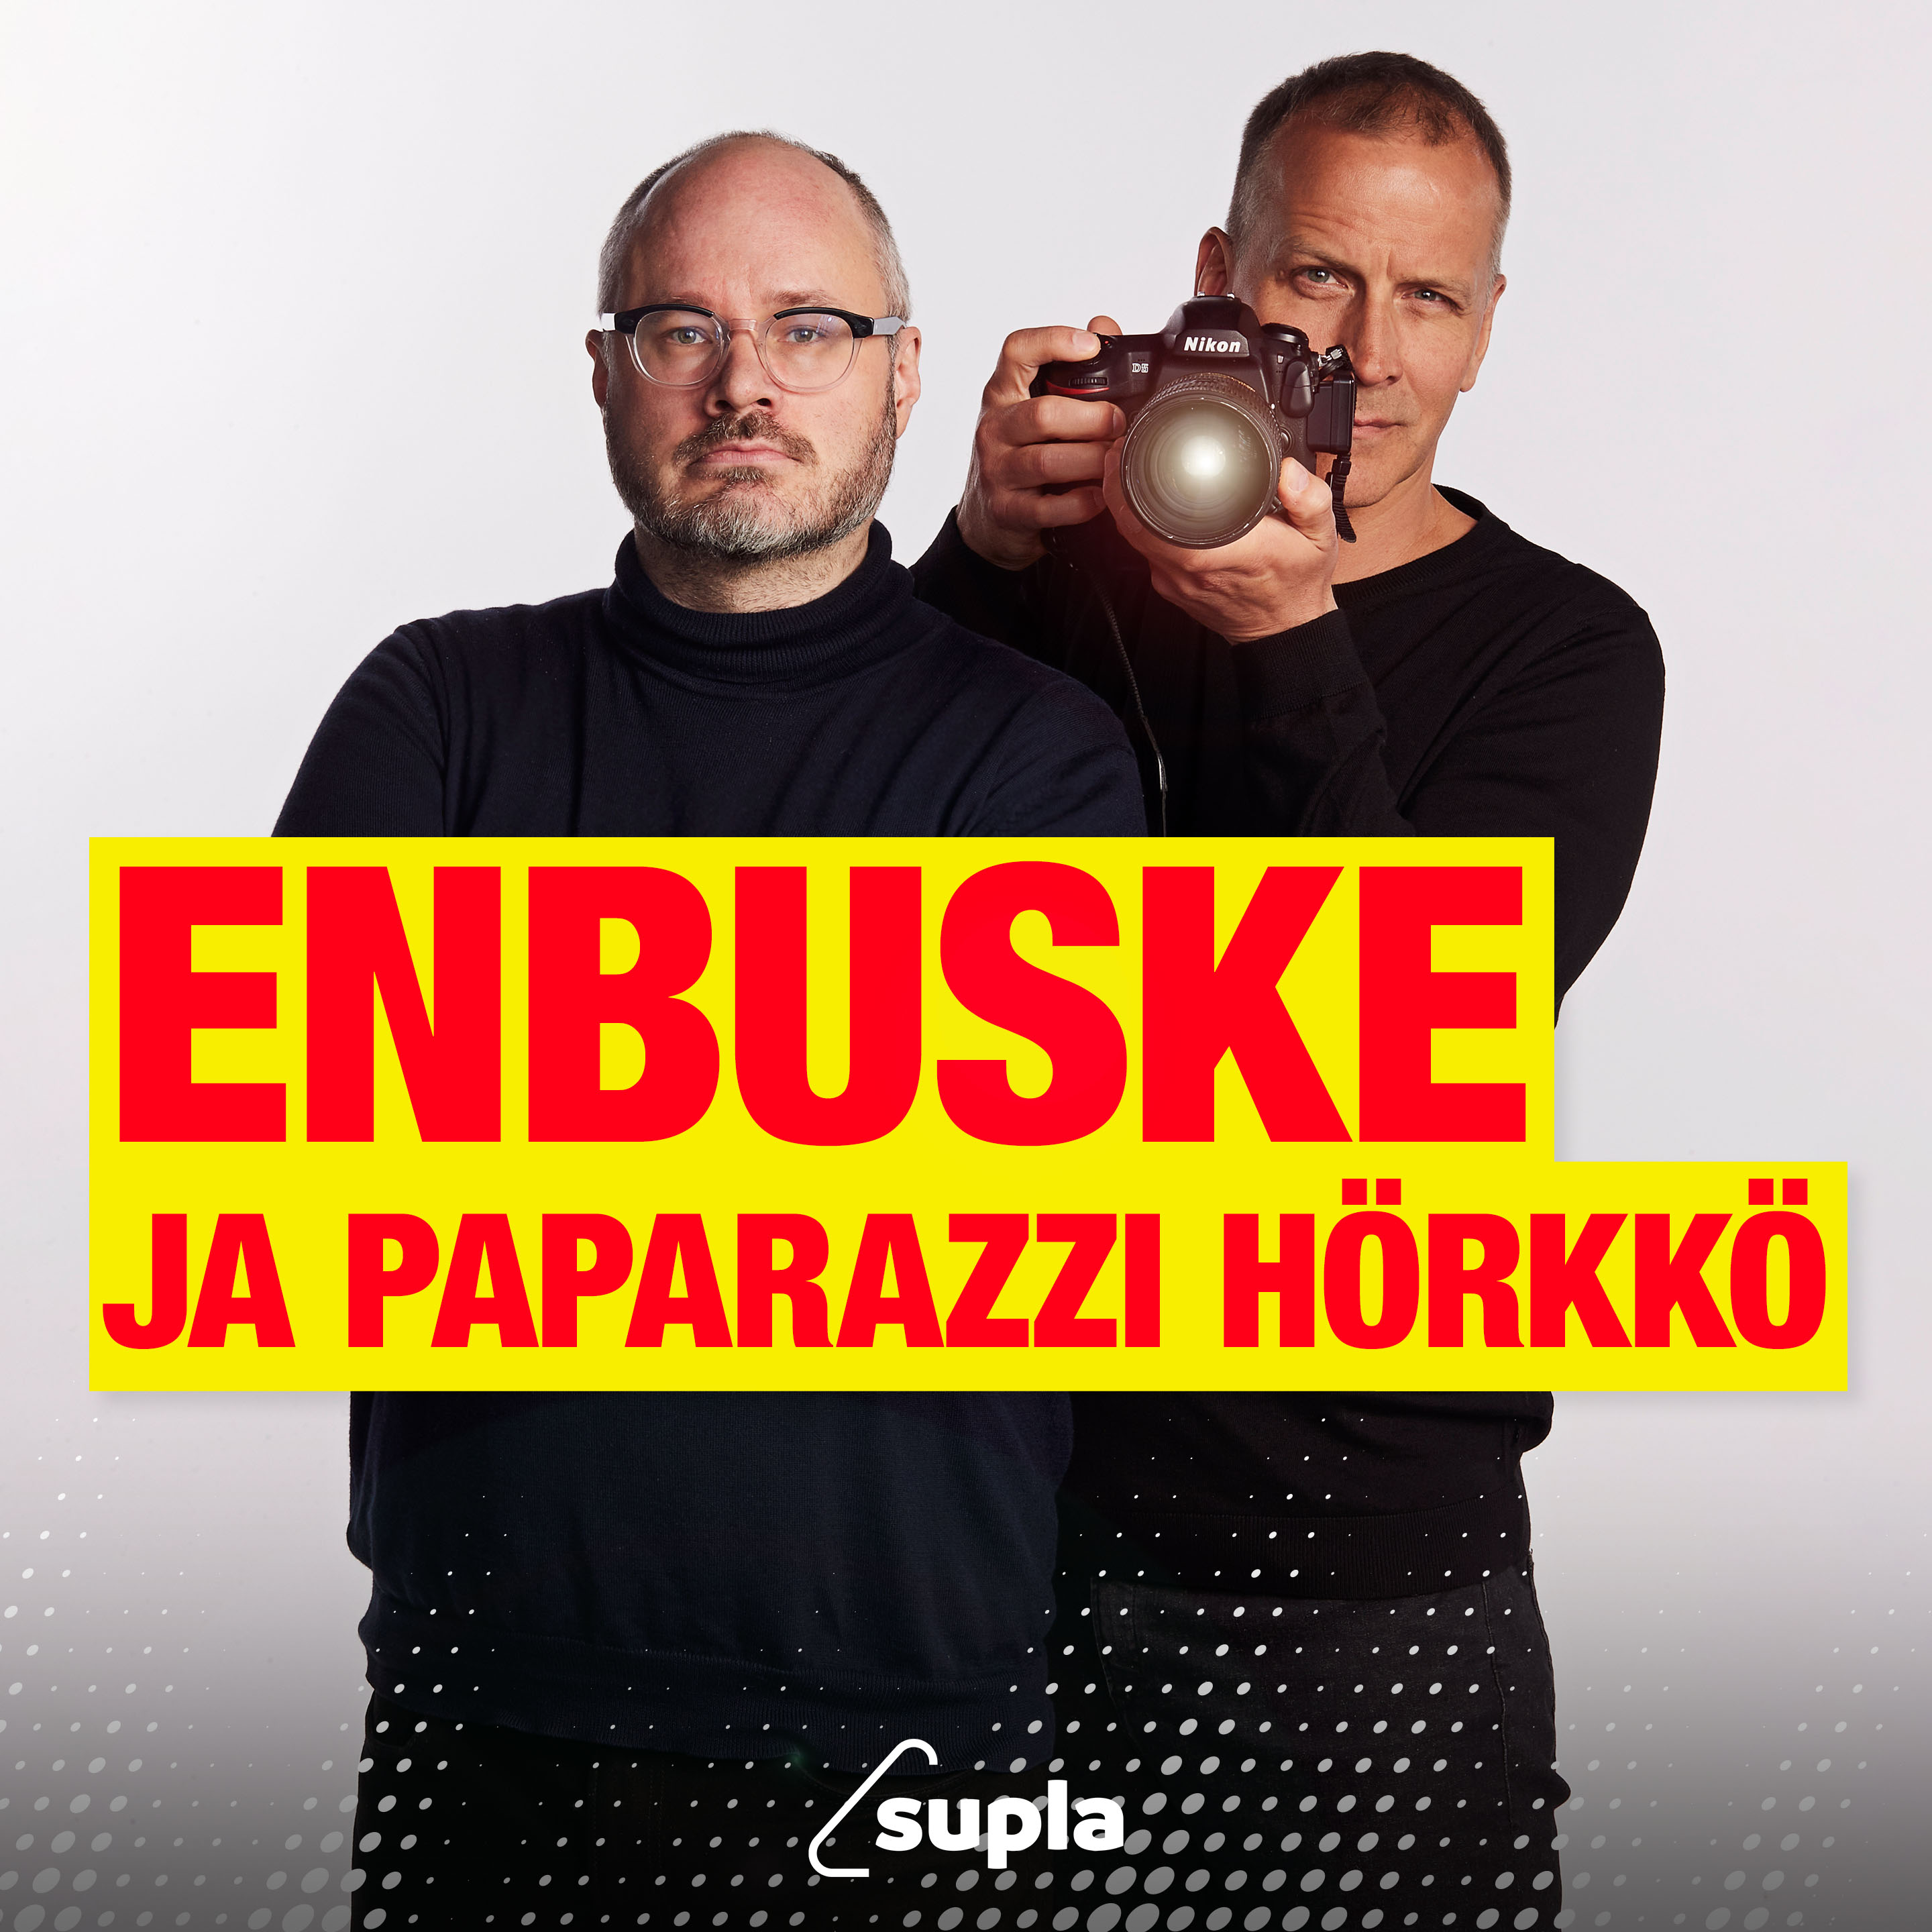 Enbuske & paparazzi Hörkkö: Q&A EXTRA!!